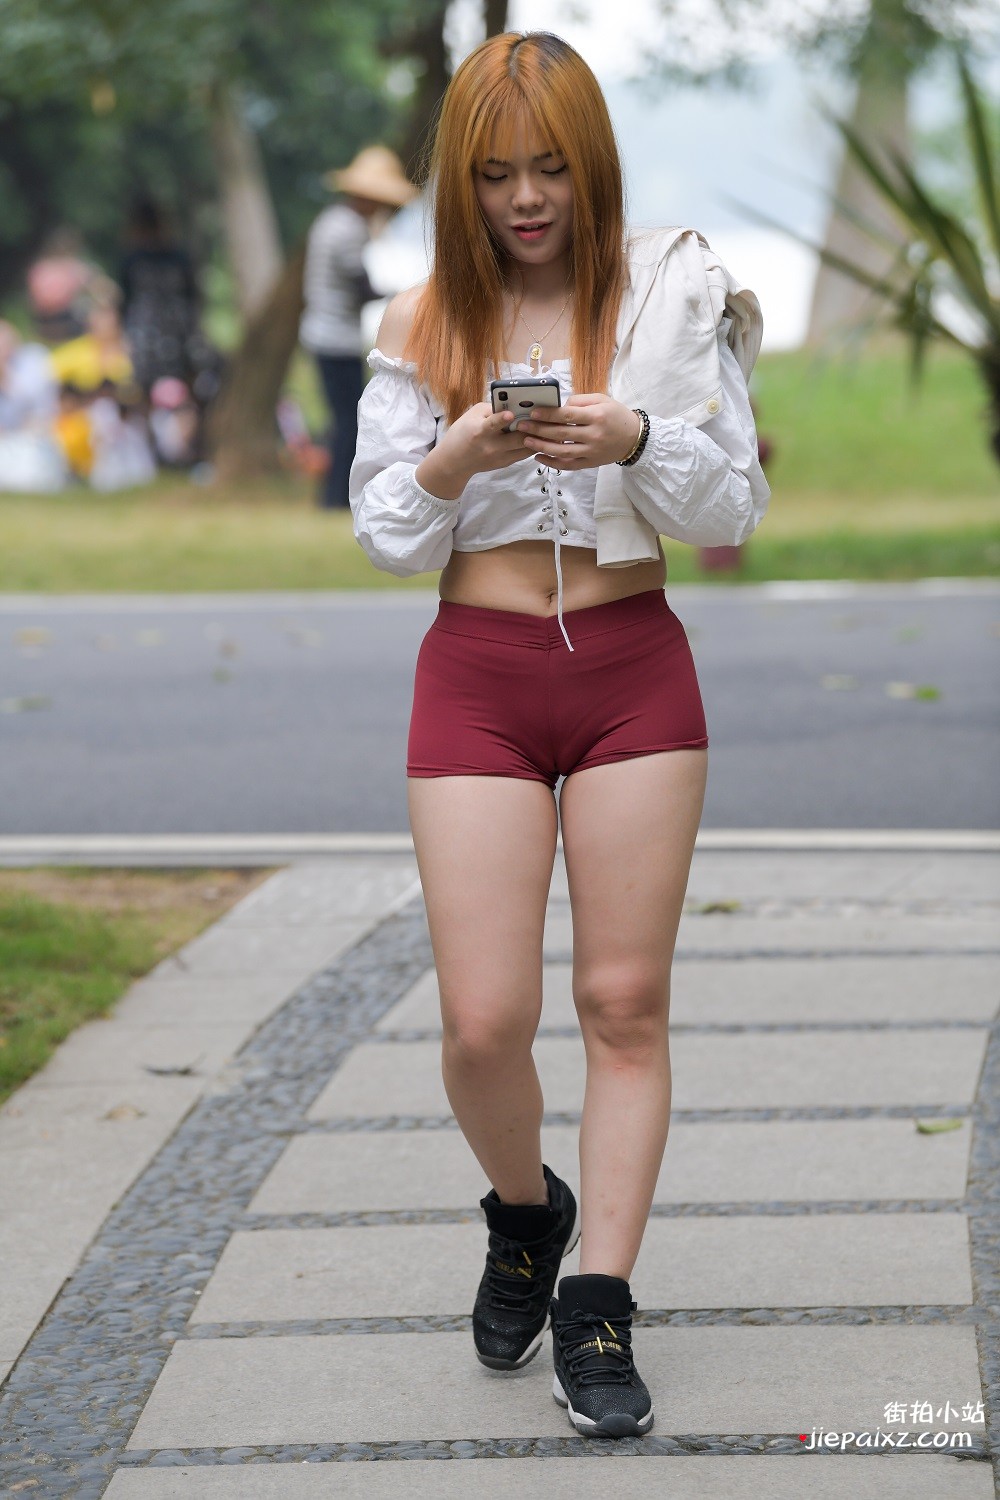 红短热裤美女公园外拍原图153P [4.52 GB/JPG]